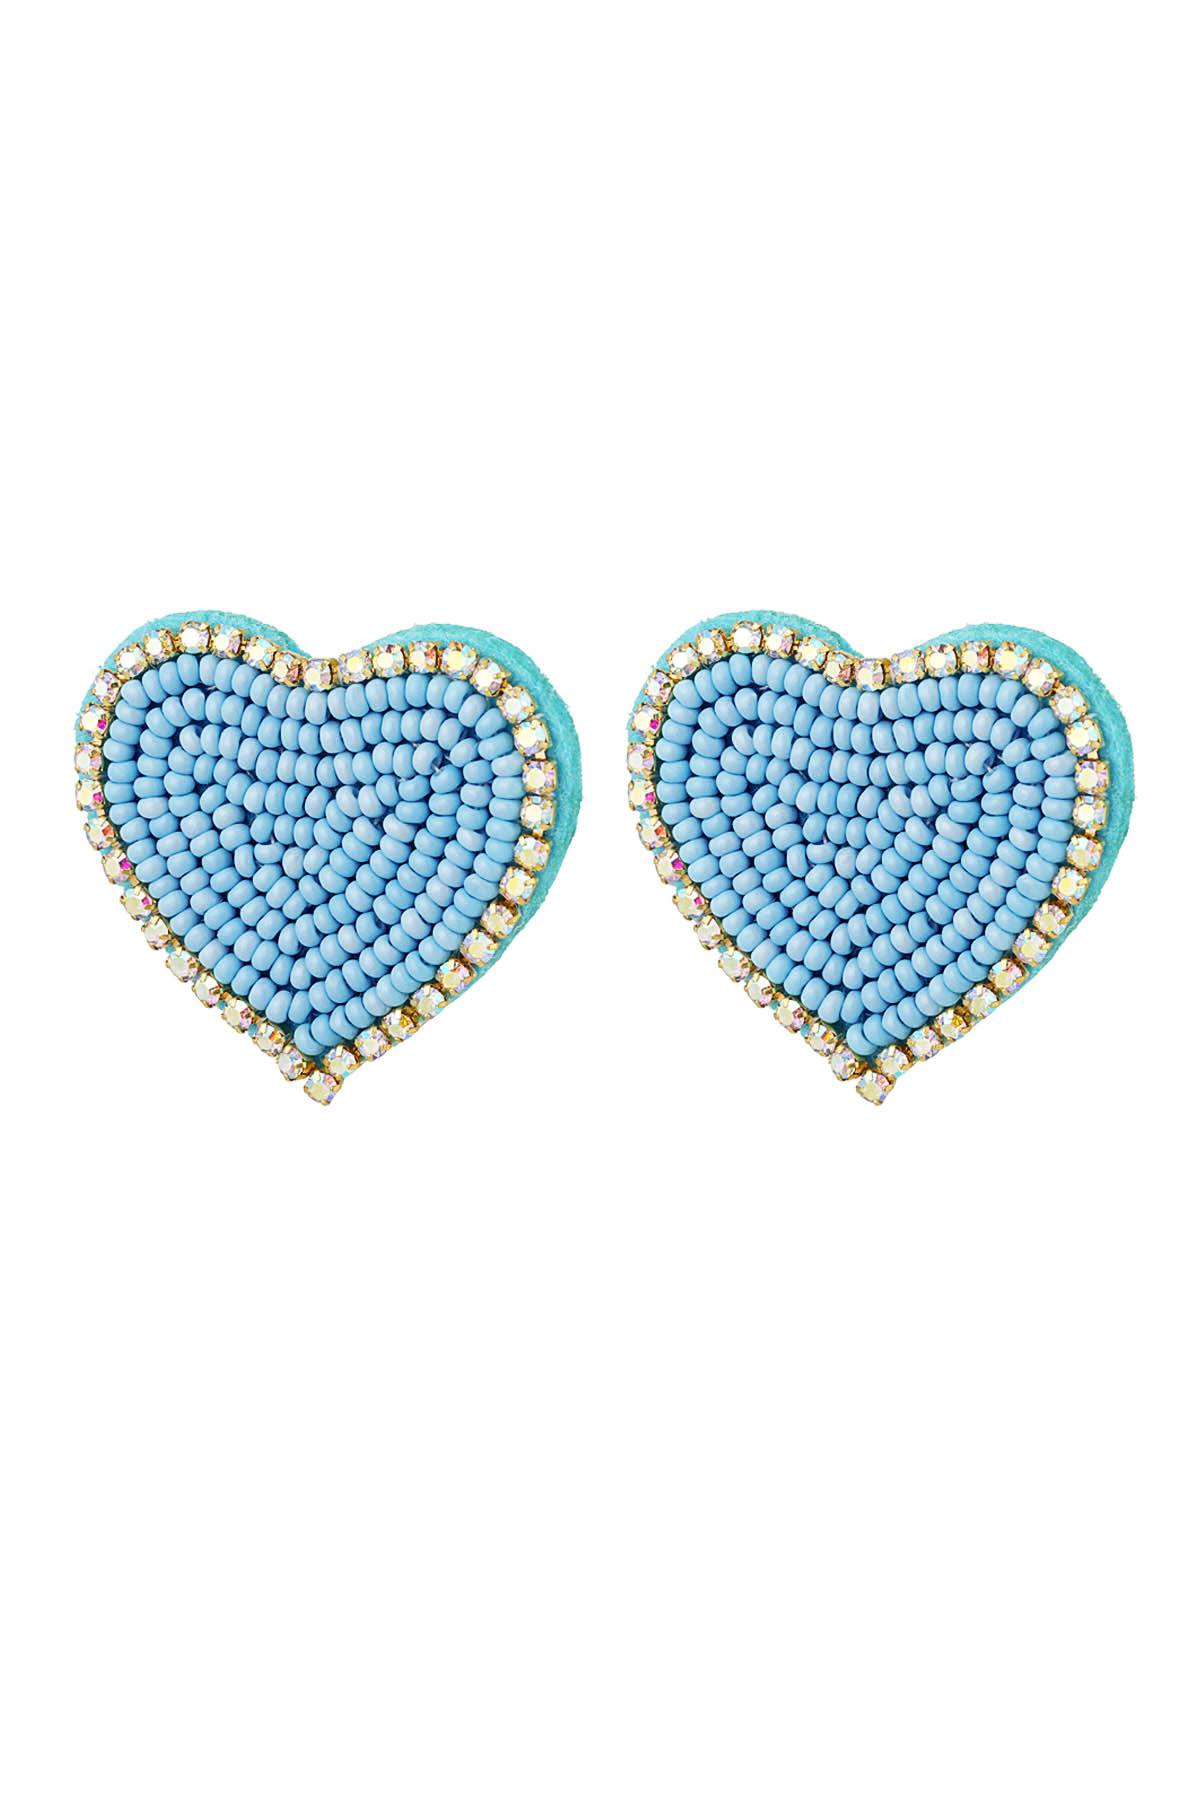 Perlenohrringe Herz mit Strasssteinen Blau Glas